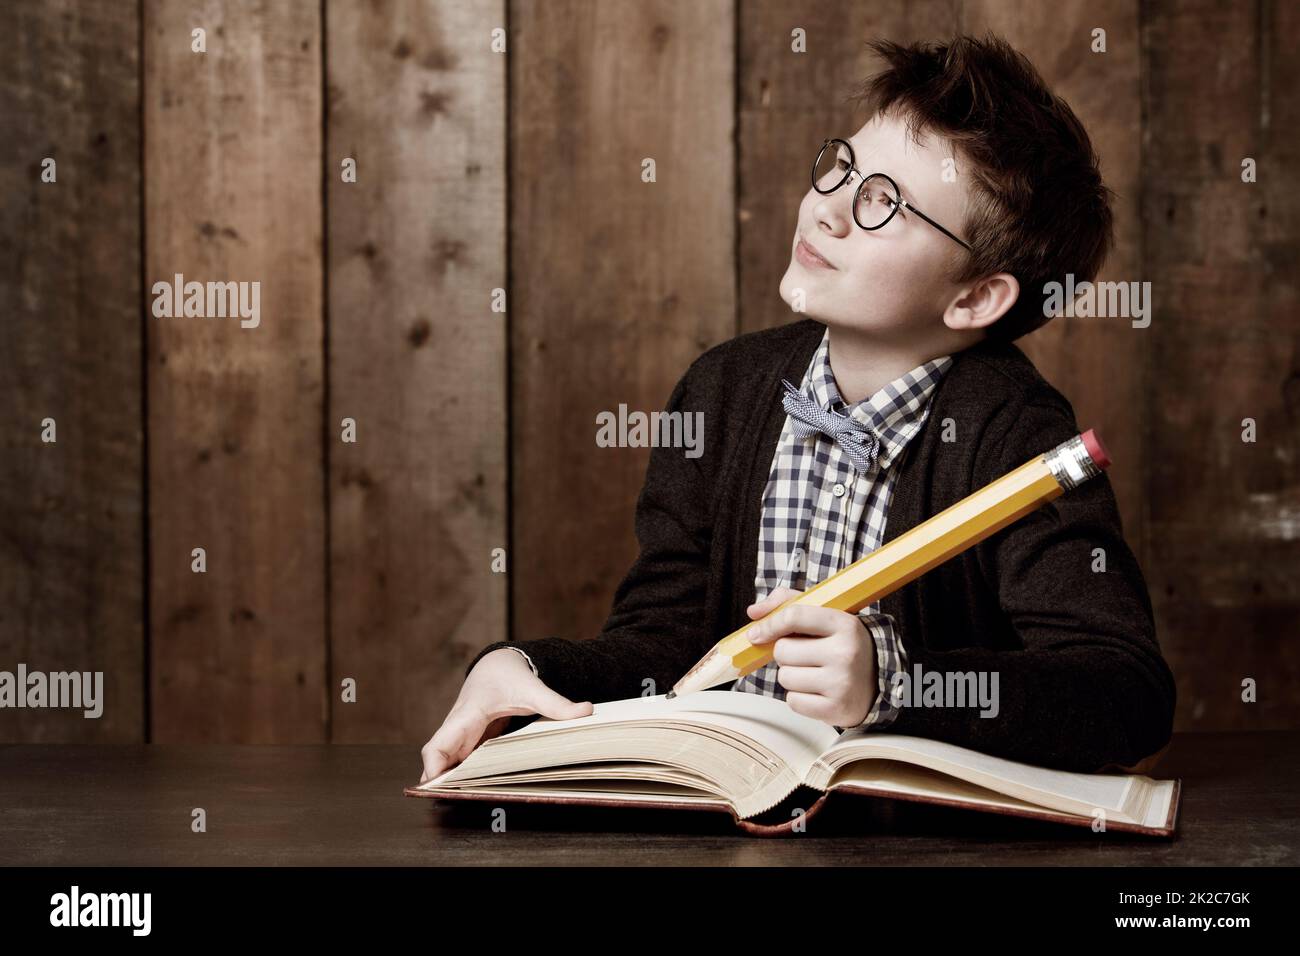 Schreiben Sie einige große Ideen auf. Kleiner Junge mit Brille und Hausaufgaben mit einem riesigen Bleistift. Stockfoto